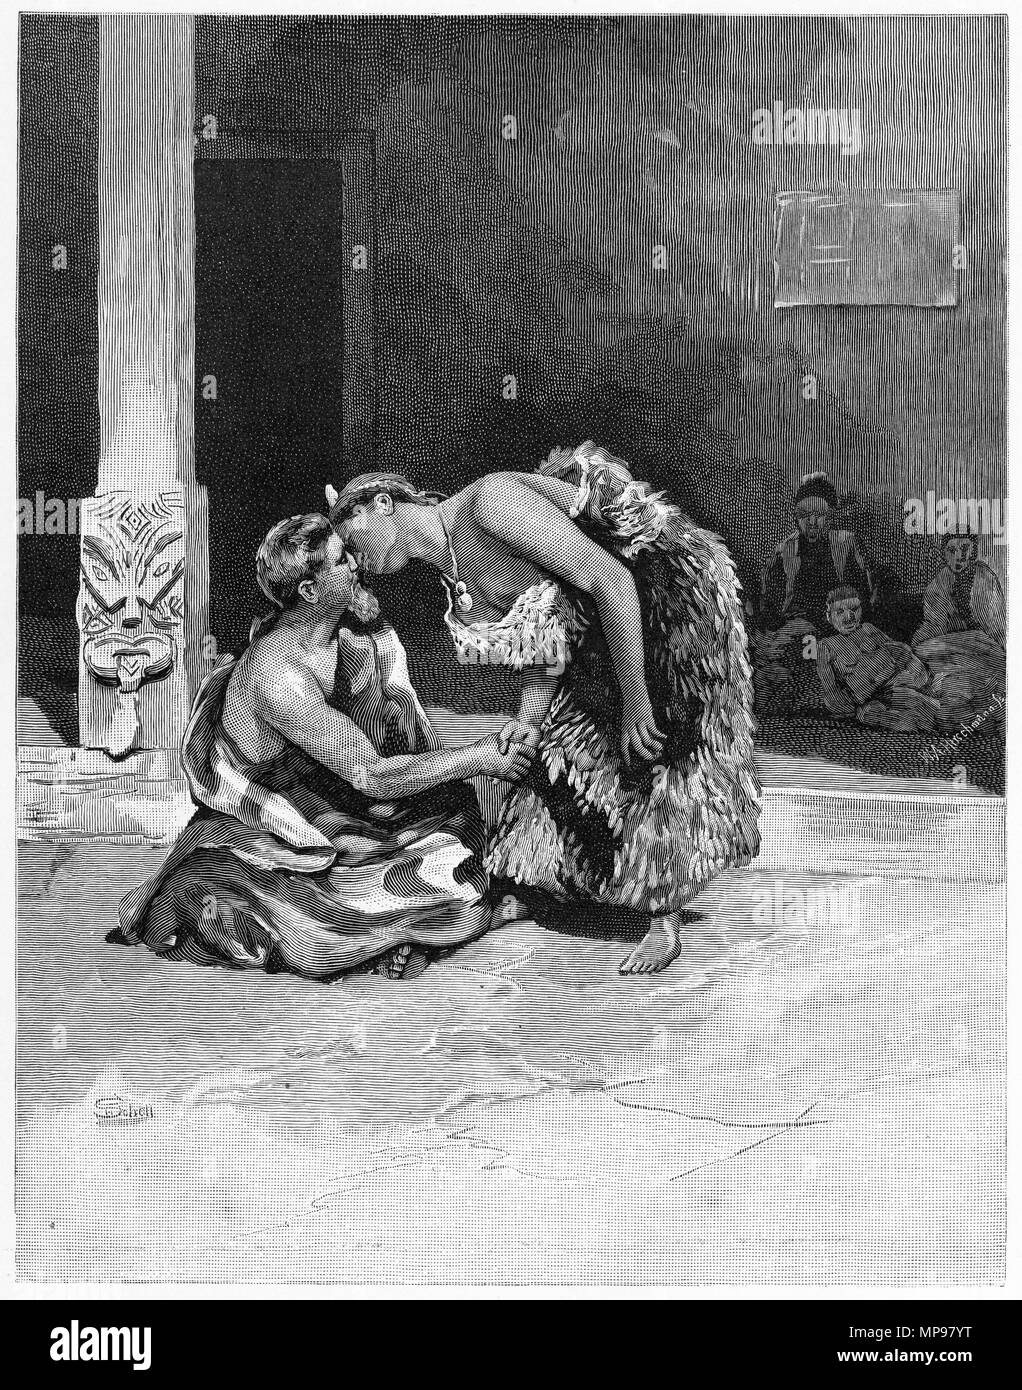 Incisione di un tradizionale saluto Maori, lo sfregamento dei nasi, Nuova Zelanda. Dal pittoresco Atlas dell Australasia Vol 3, 1886 Foto Stock